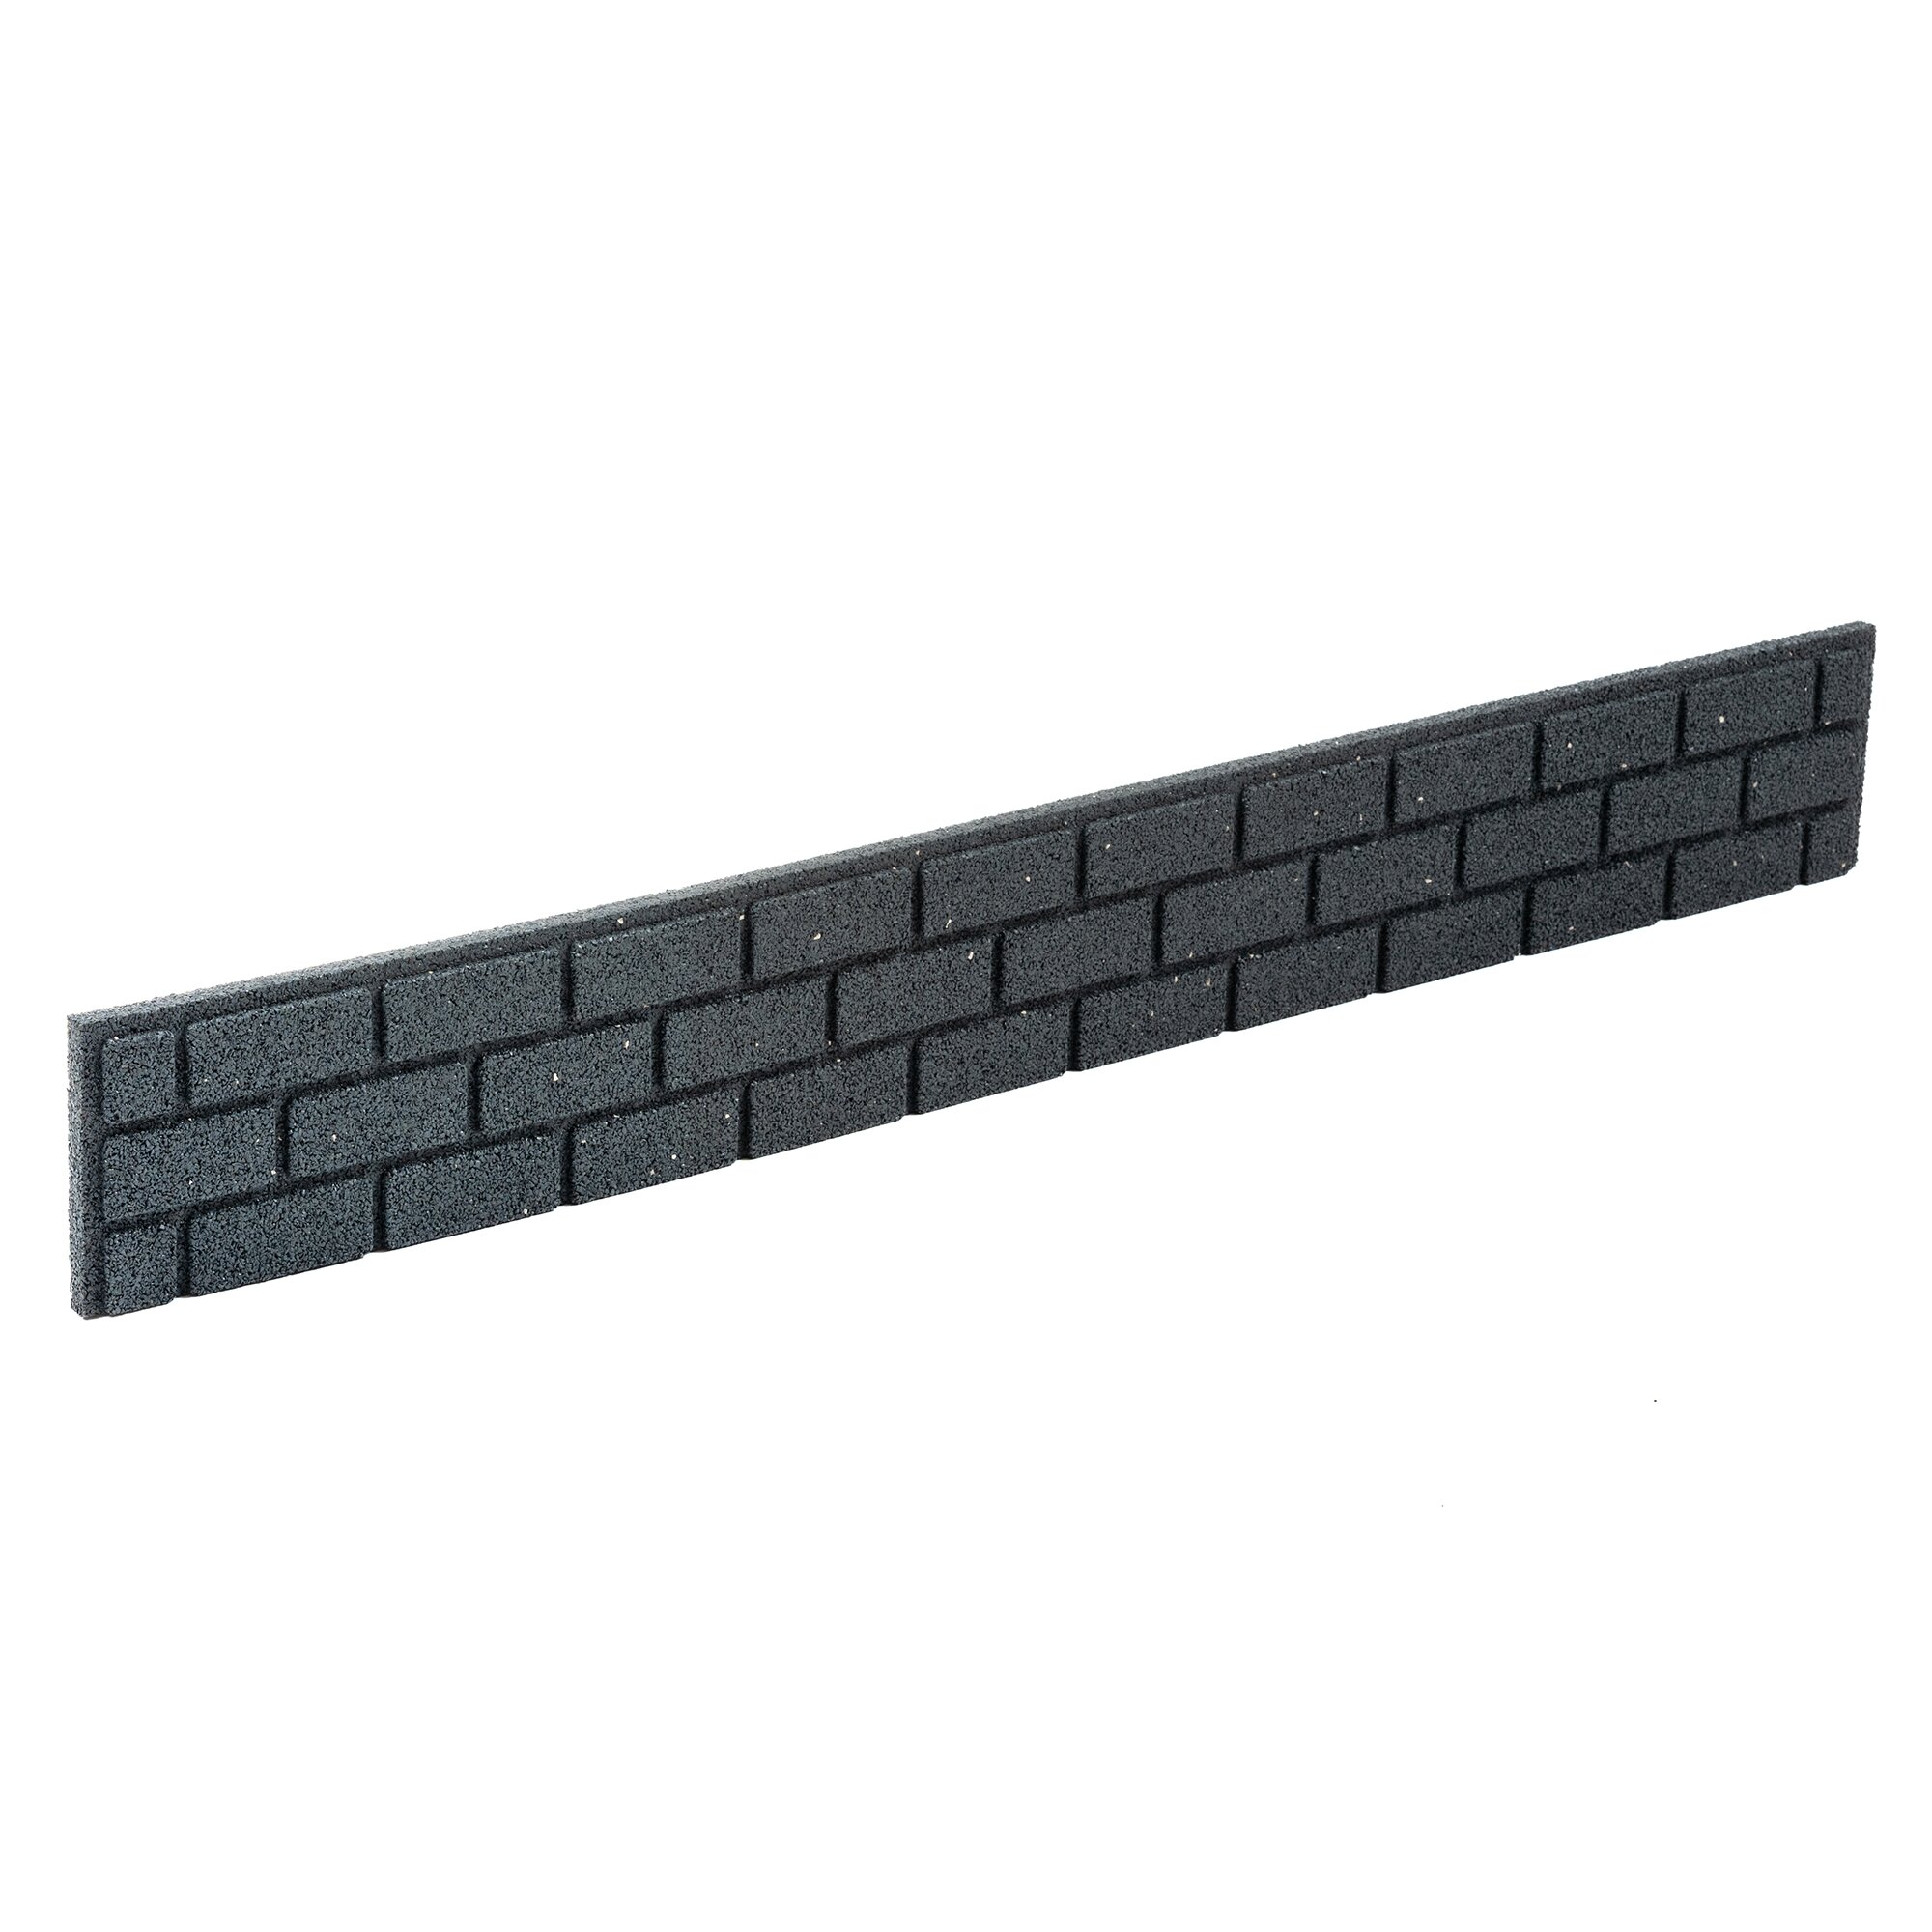 Šedý gumový zahradní obrubník FLOMA Bricks - délka 120 cm, šířka 2 cm, výška 15 cm